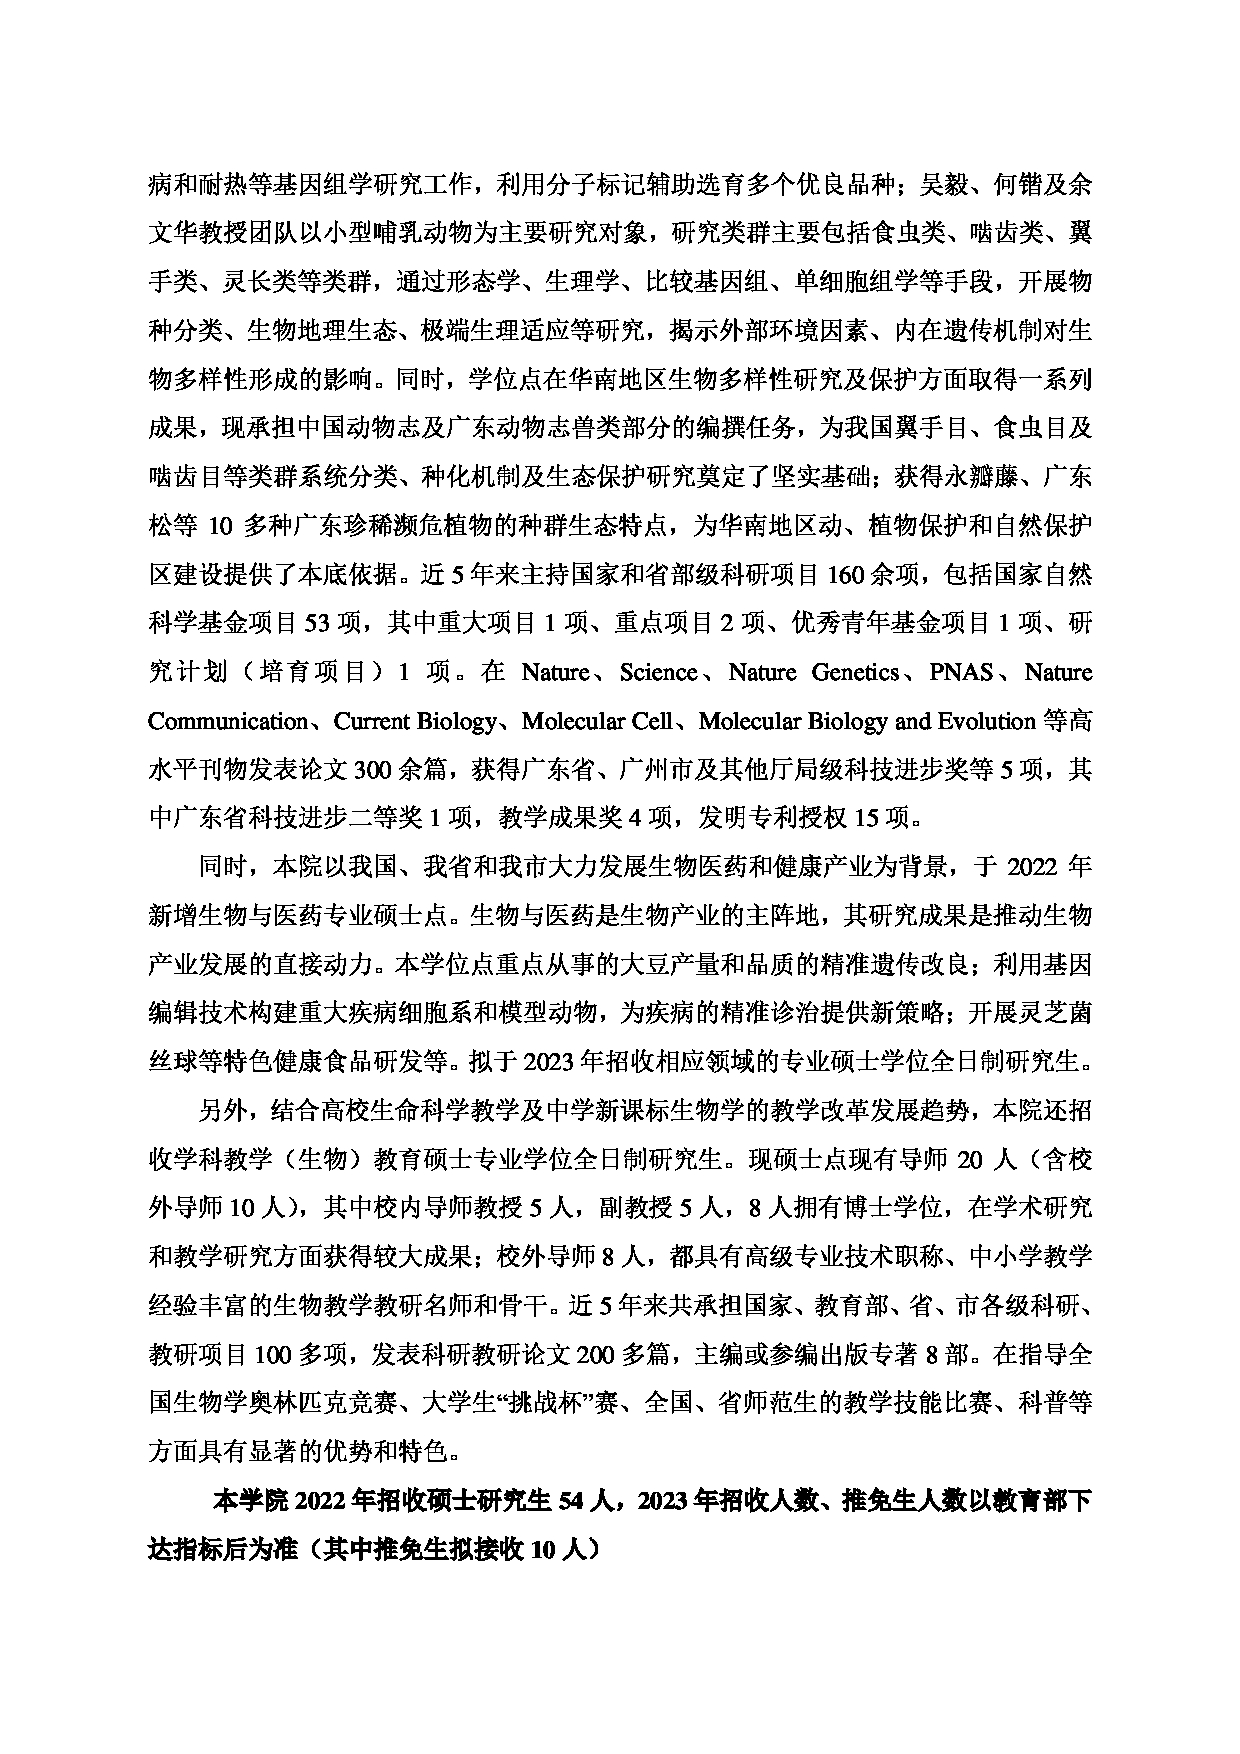 2023招生目录：广州大学2023年  17生命科学学院 研究生考试招生目录第2页